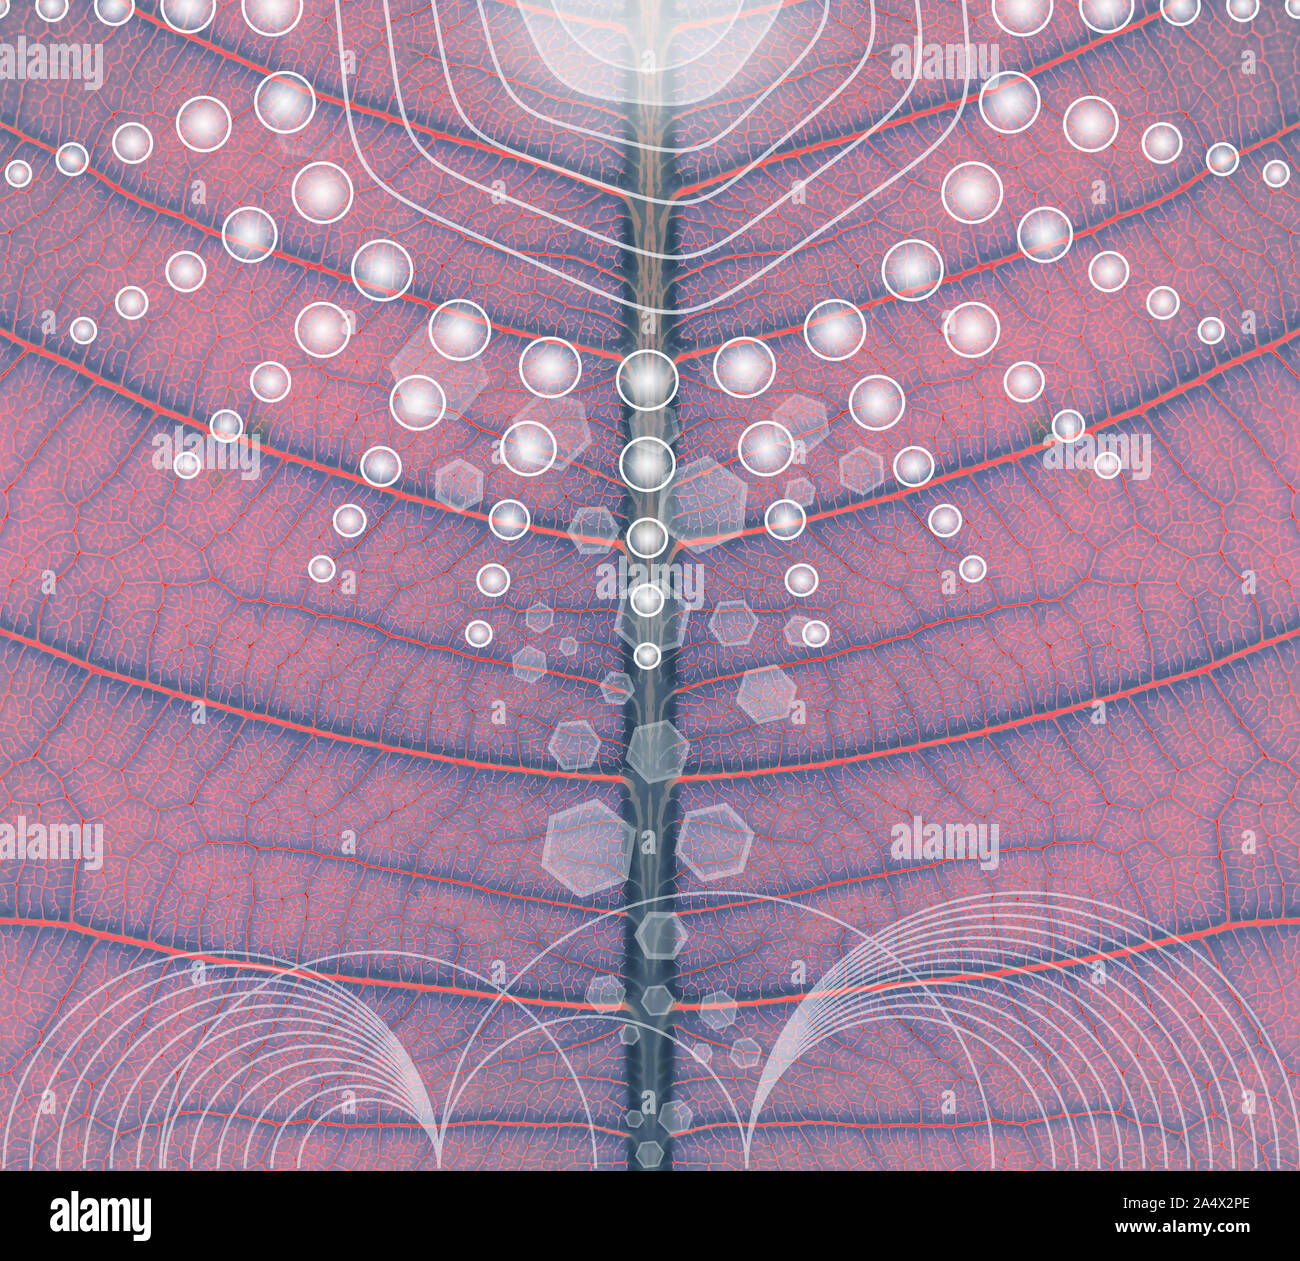 Künstliche Photosynthese - Bionik - Abstrakte Abbildung Stockfoto